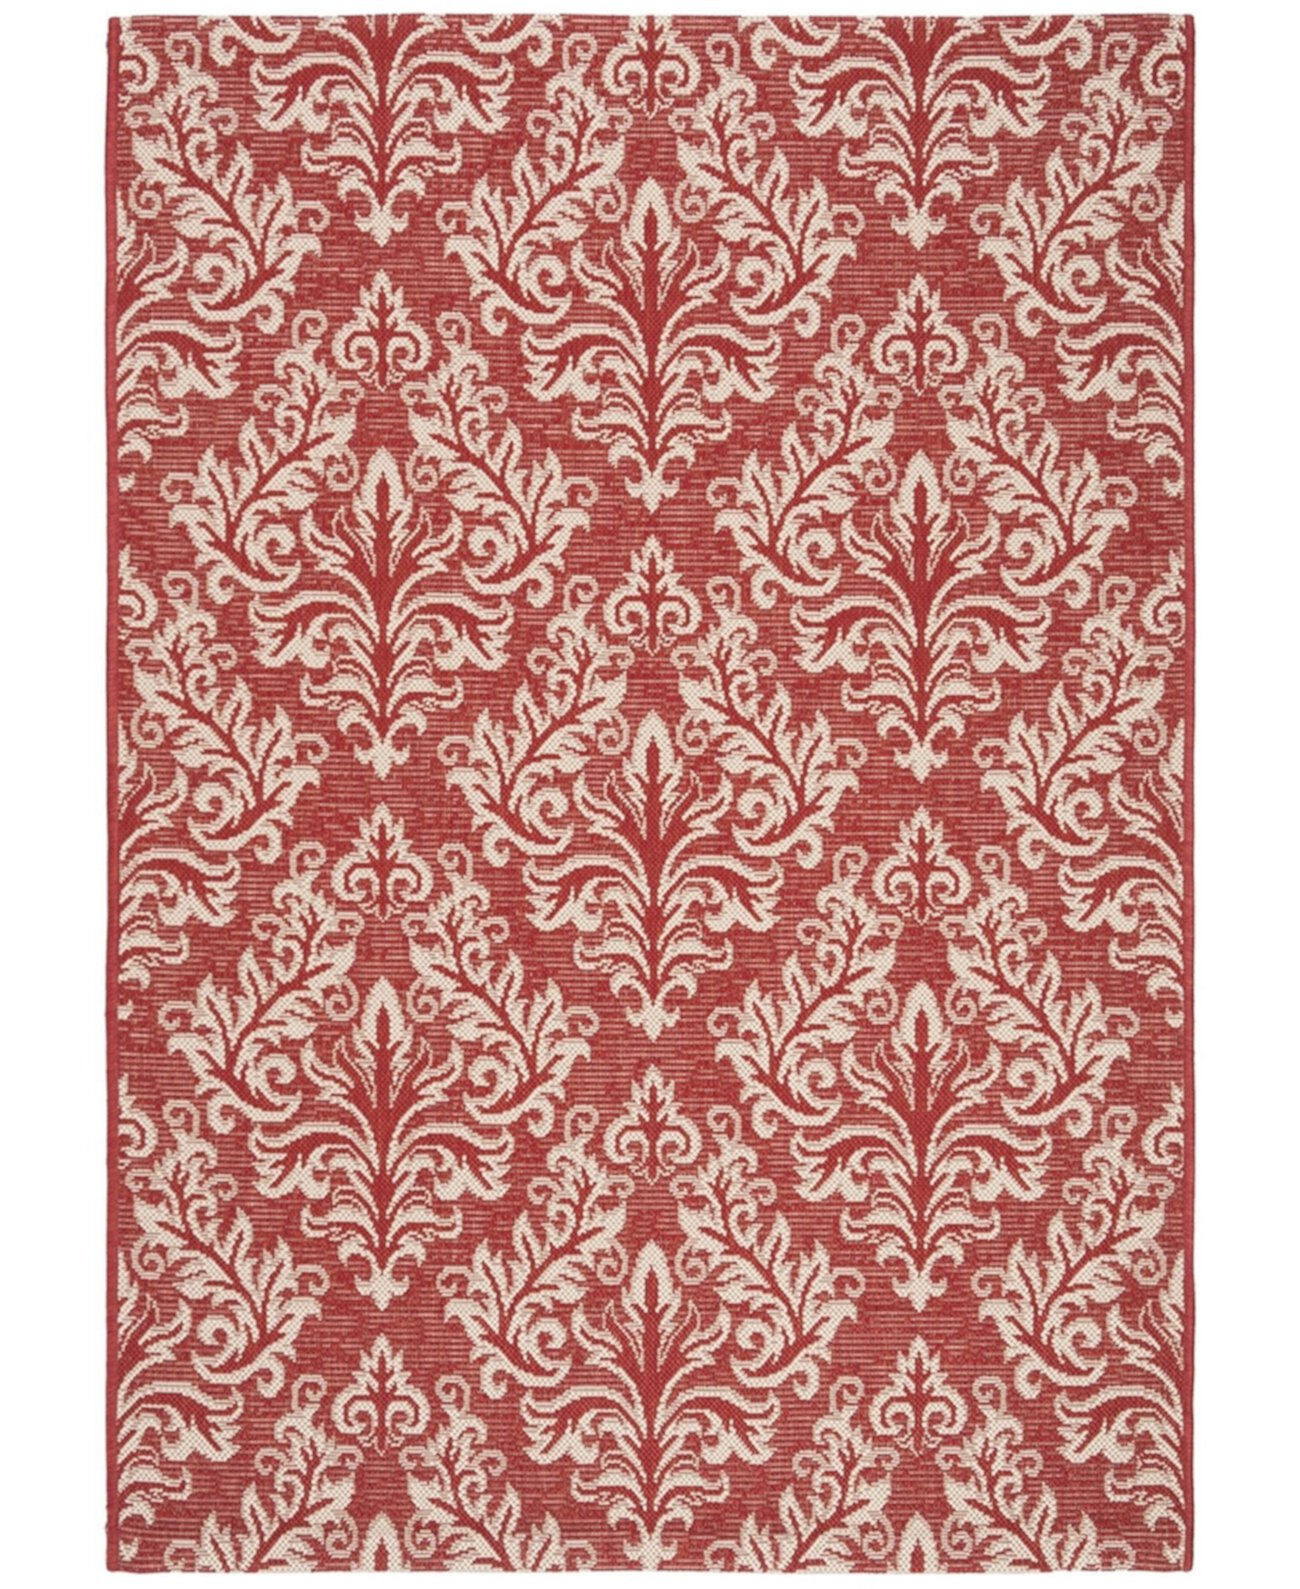 Courtyard CY6930 Красный и кремовый коврик размером 5 футов 3 x 7 футов 7 дюймов Safavieh